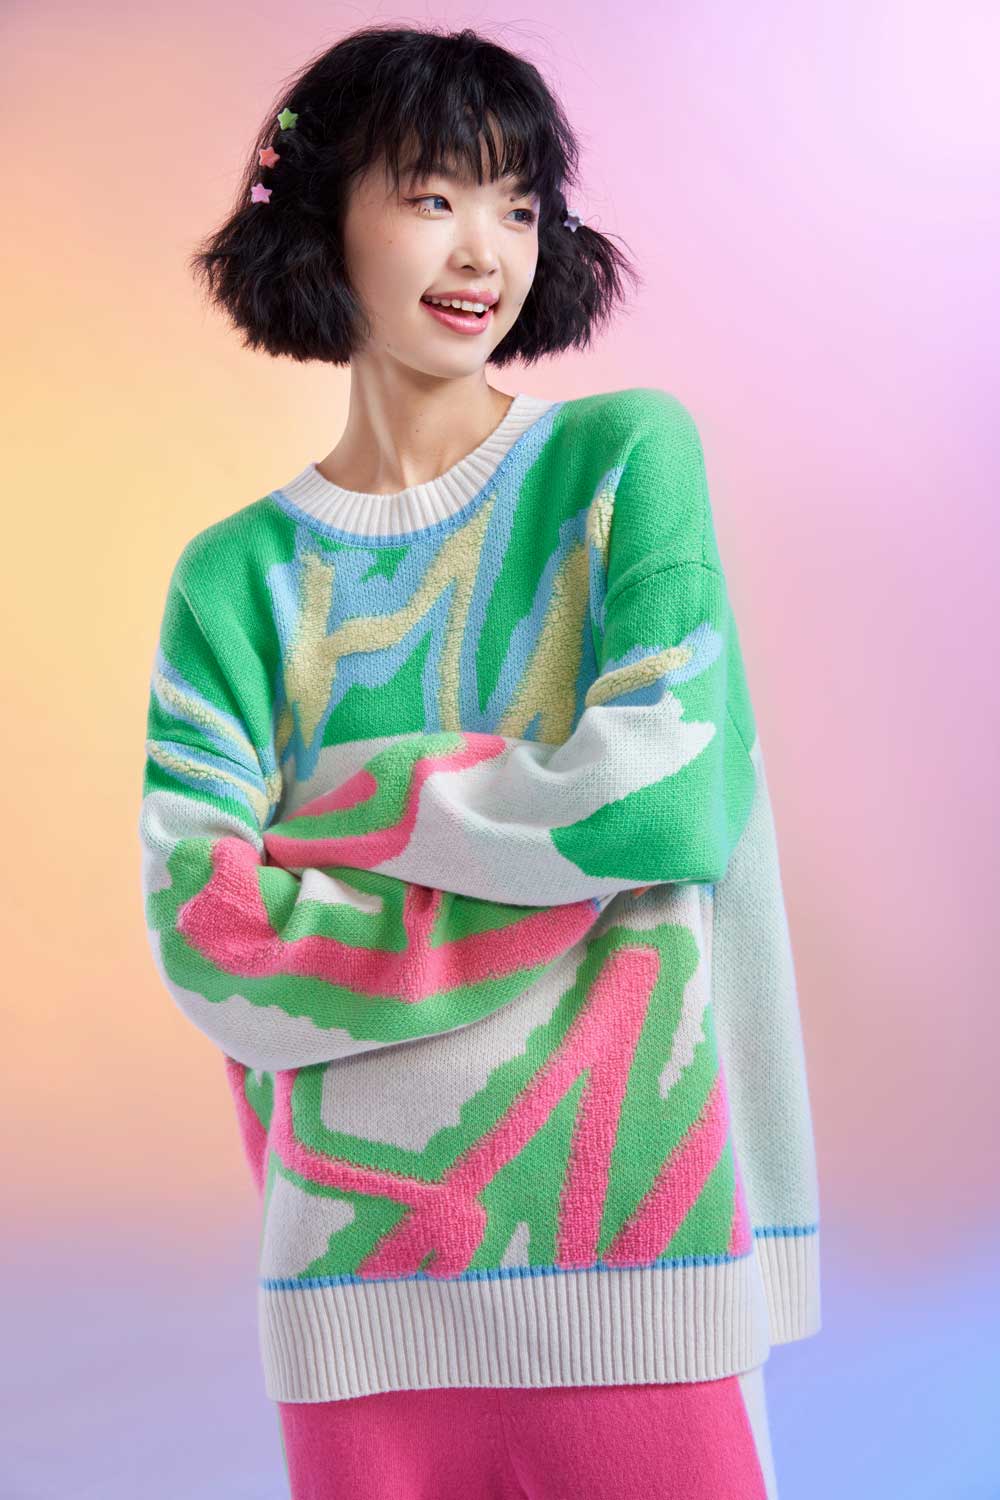 Chau Rising es la marca china que pone de moda el cachemir